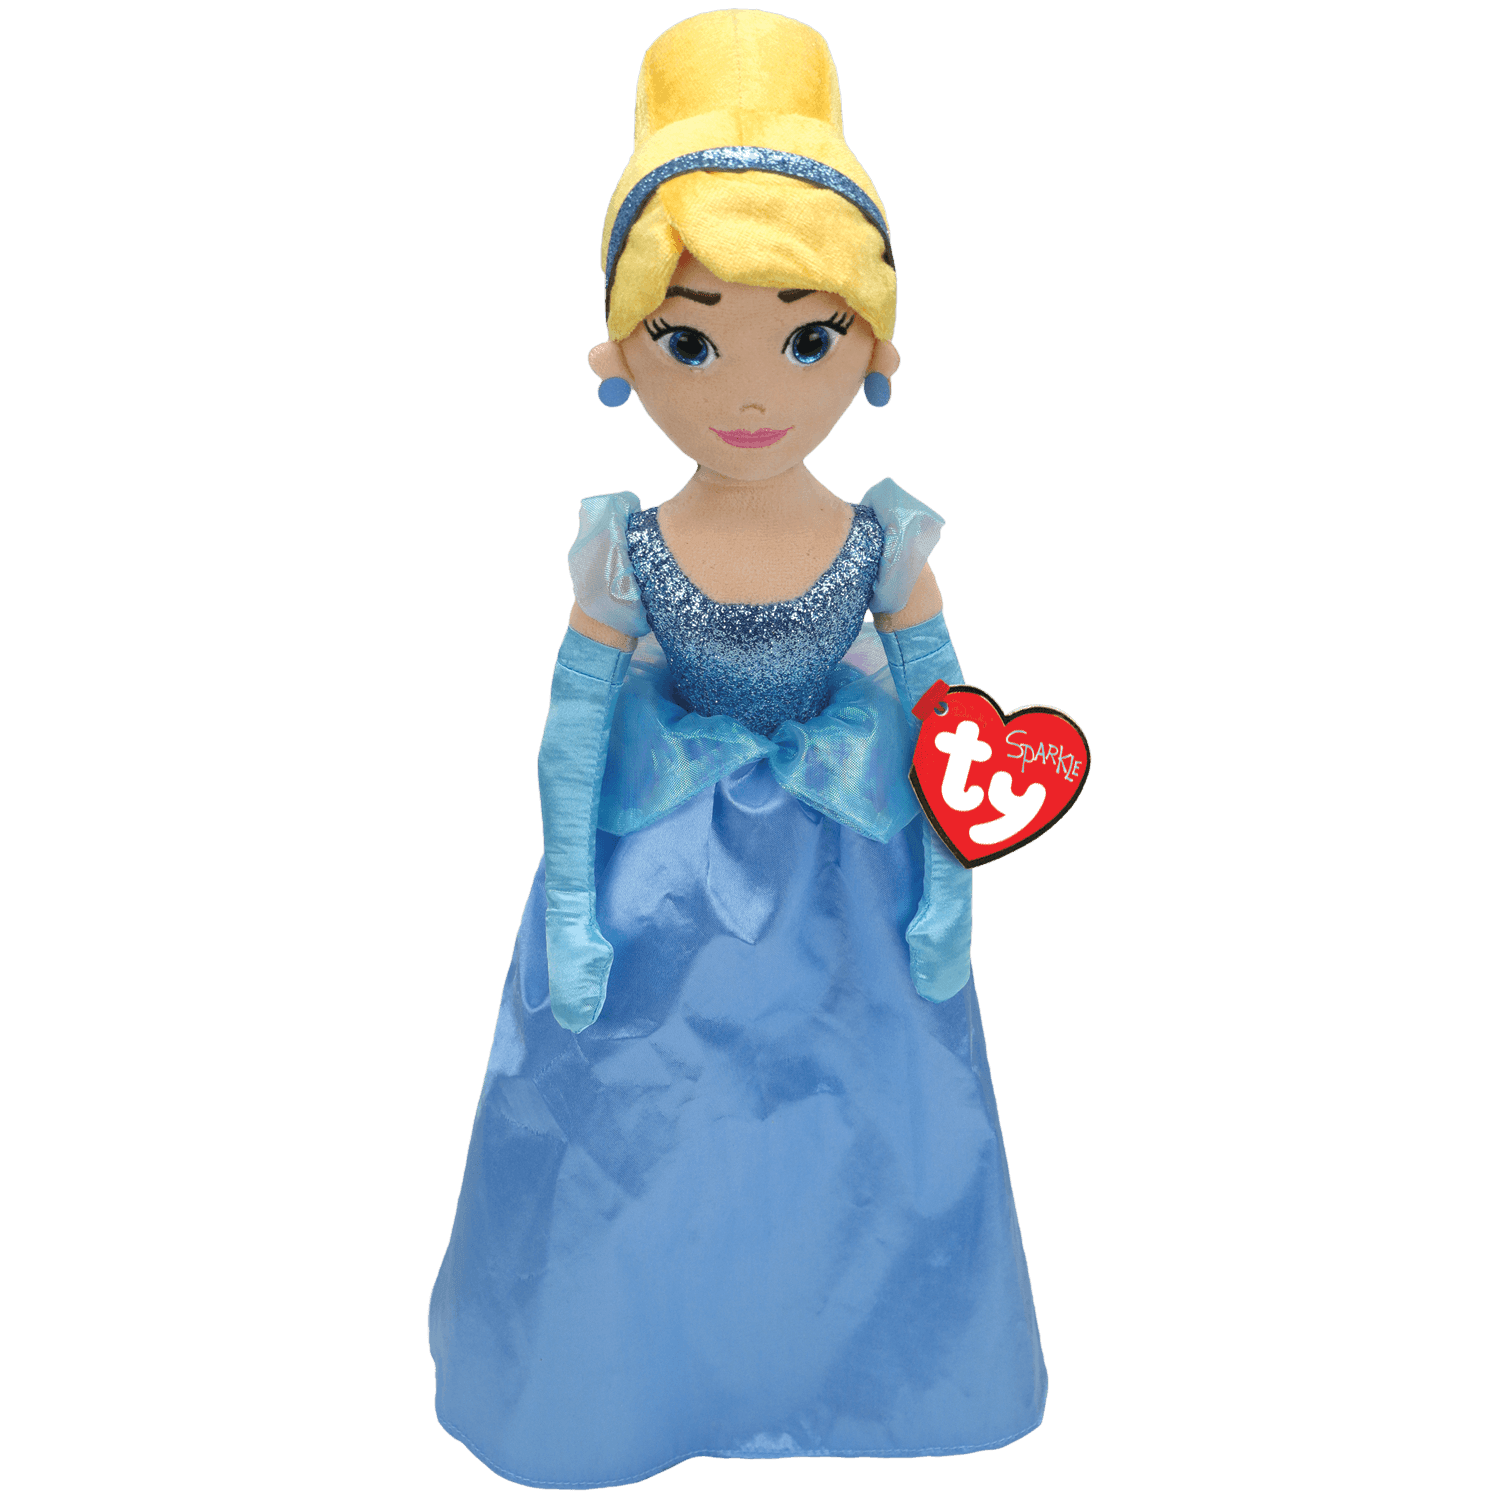 TY Sparkle Disney's Princess Cinderella Beanie Buddy Plush Toy